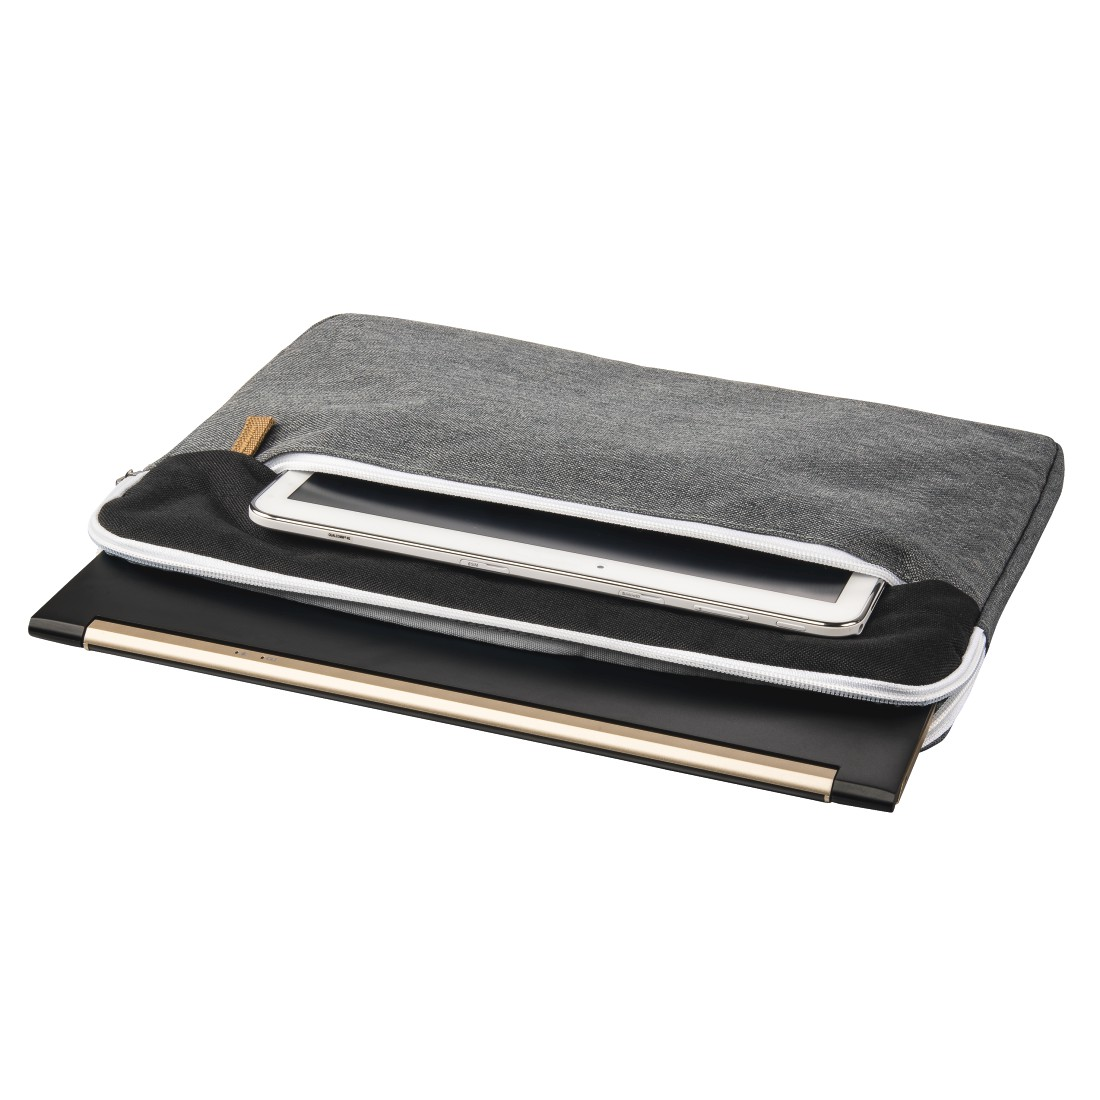 HAMA Florenz 13.3 Zoll Notebooktasche für Polyester, Sleeve Universal Schwarz/Grau